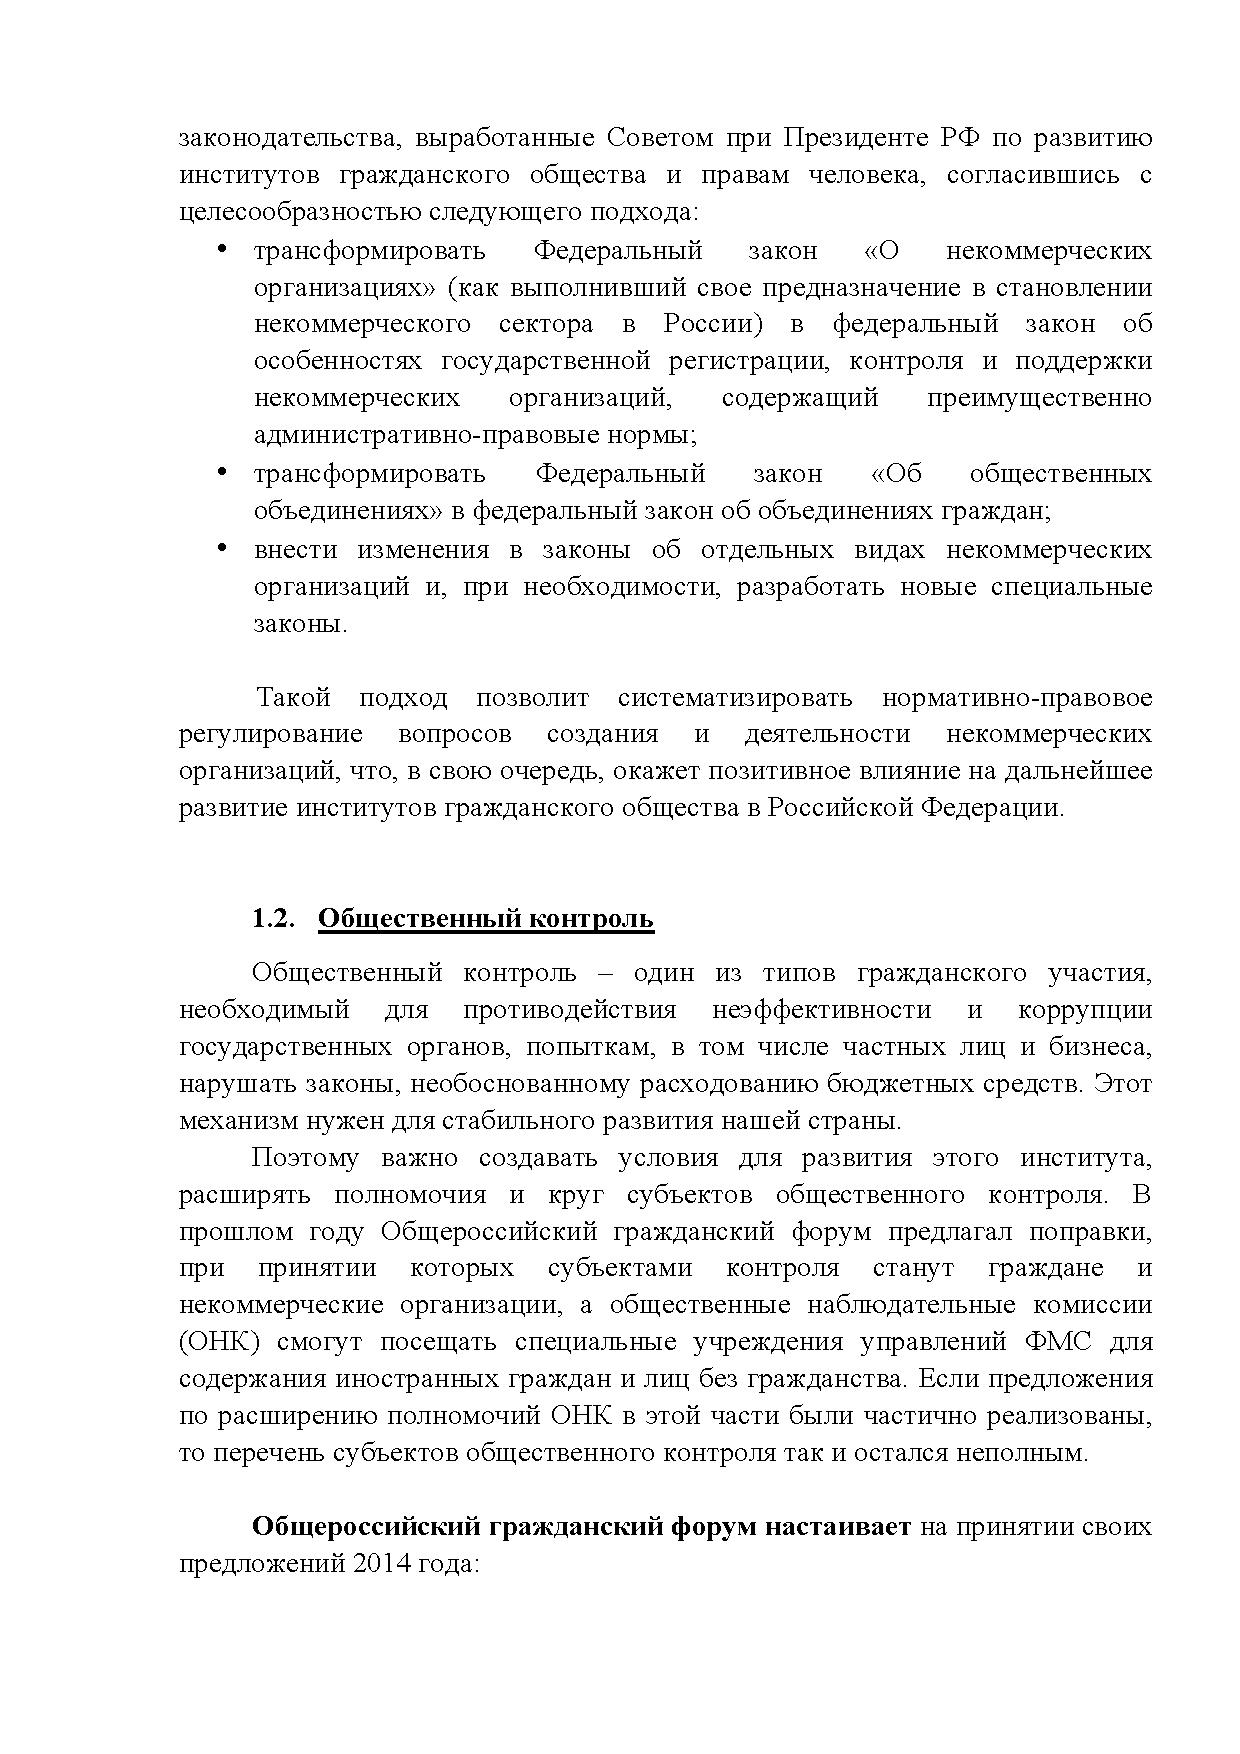  Опубликованы Предложения Общероссийского гражданского форума 2015 - фото 11